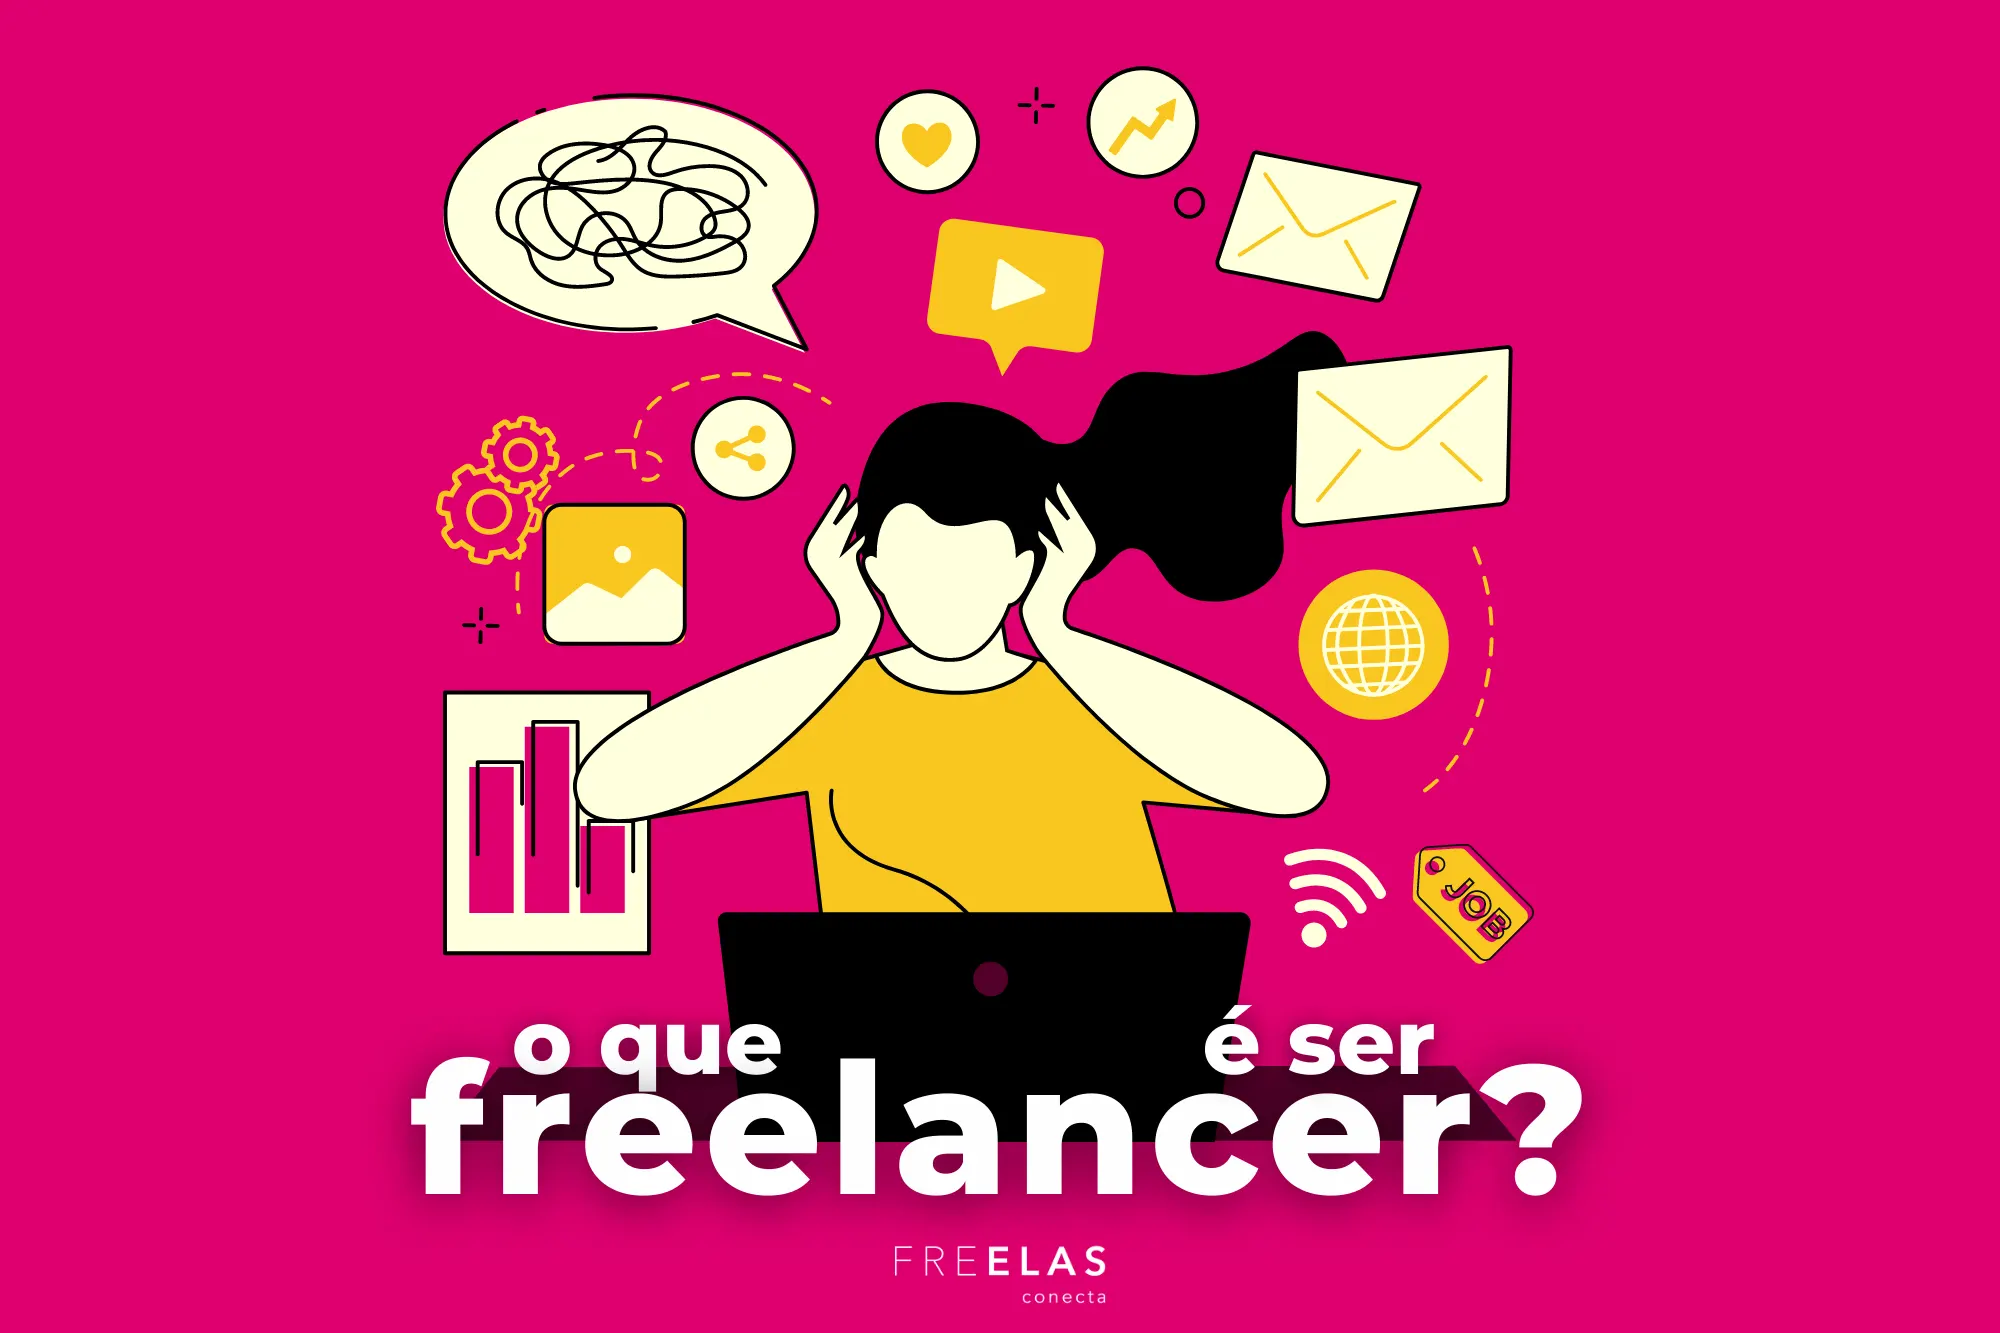 o_que_e_ser_um_freelancer